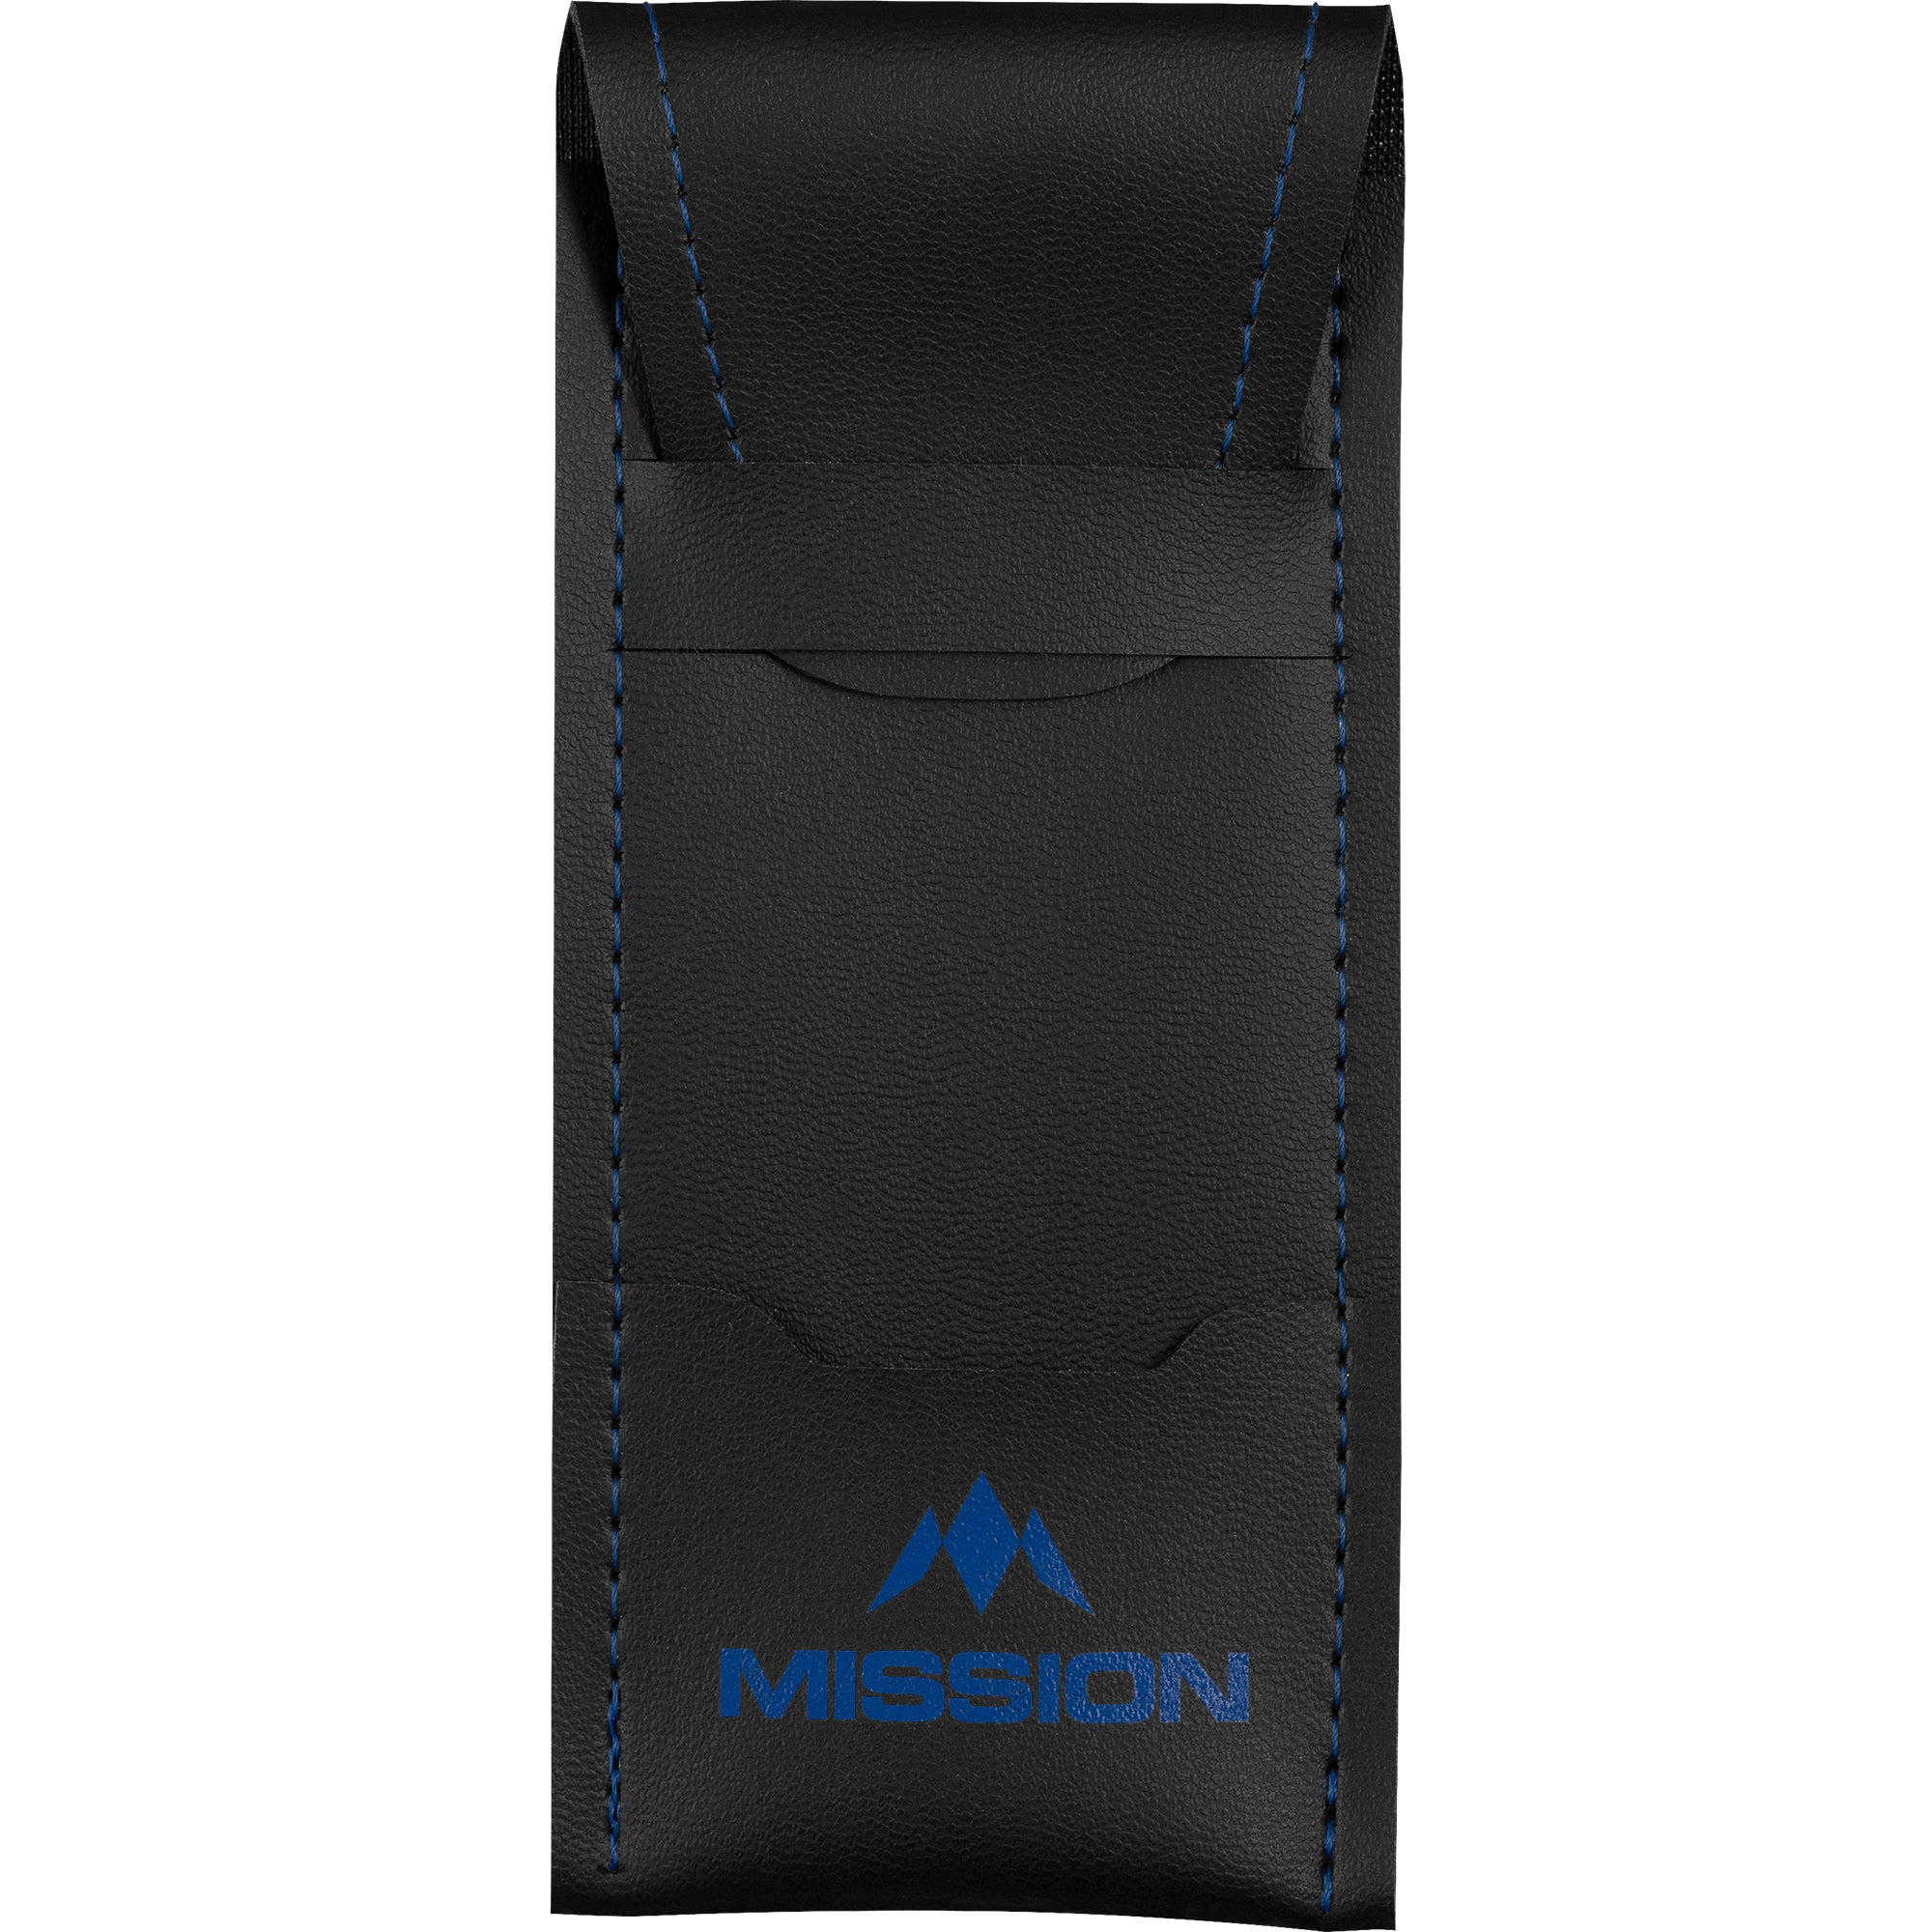 Mission Sport 8 Dart Case - Black/Blue